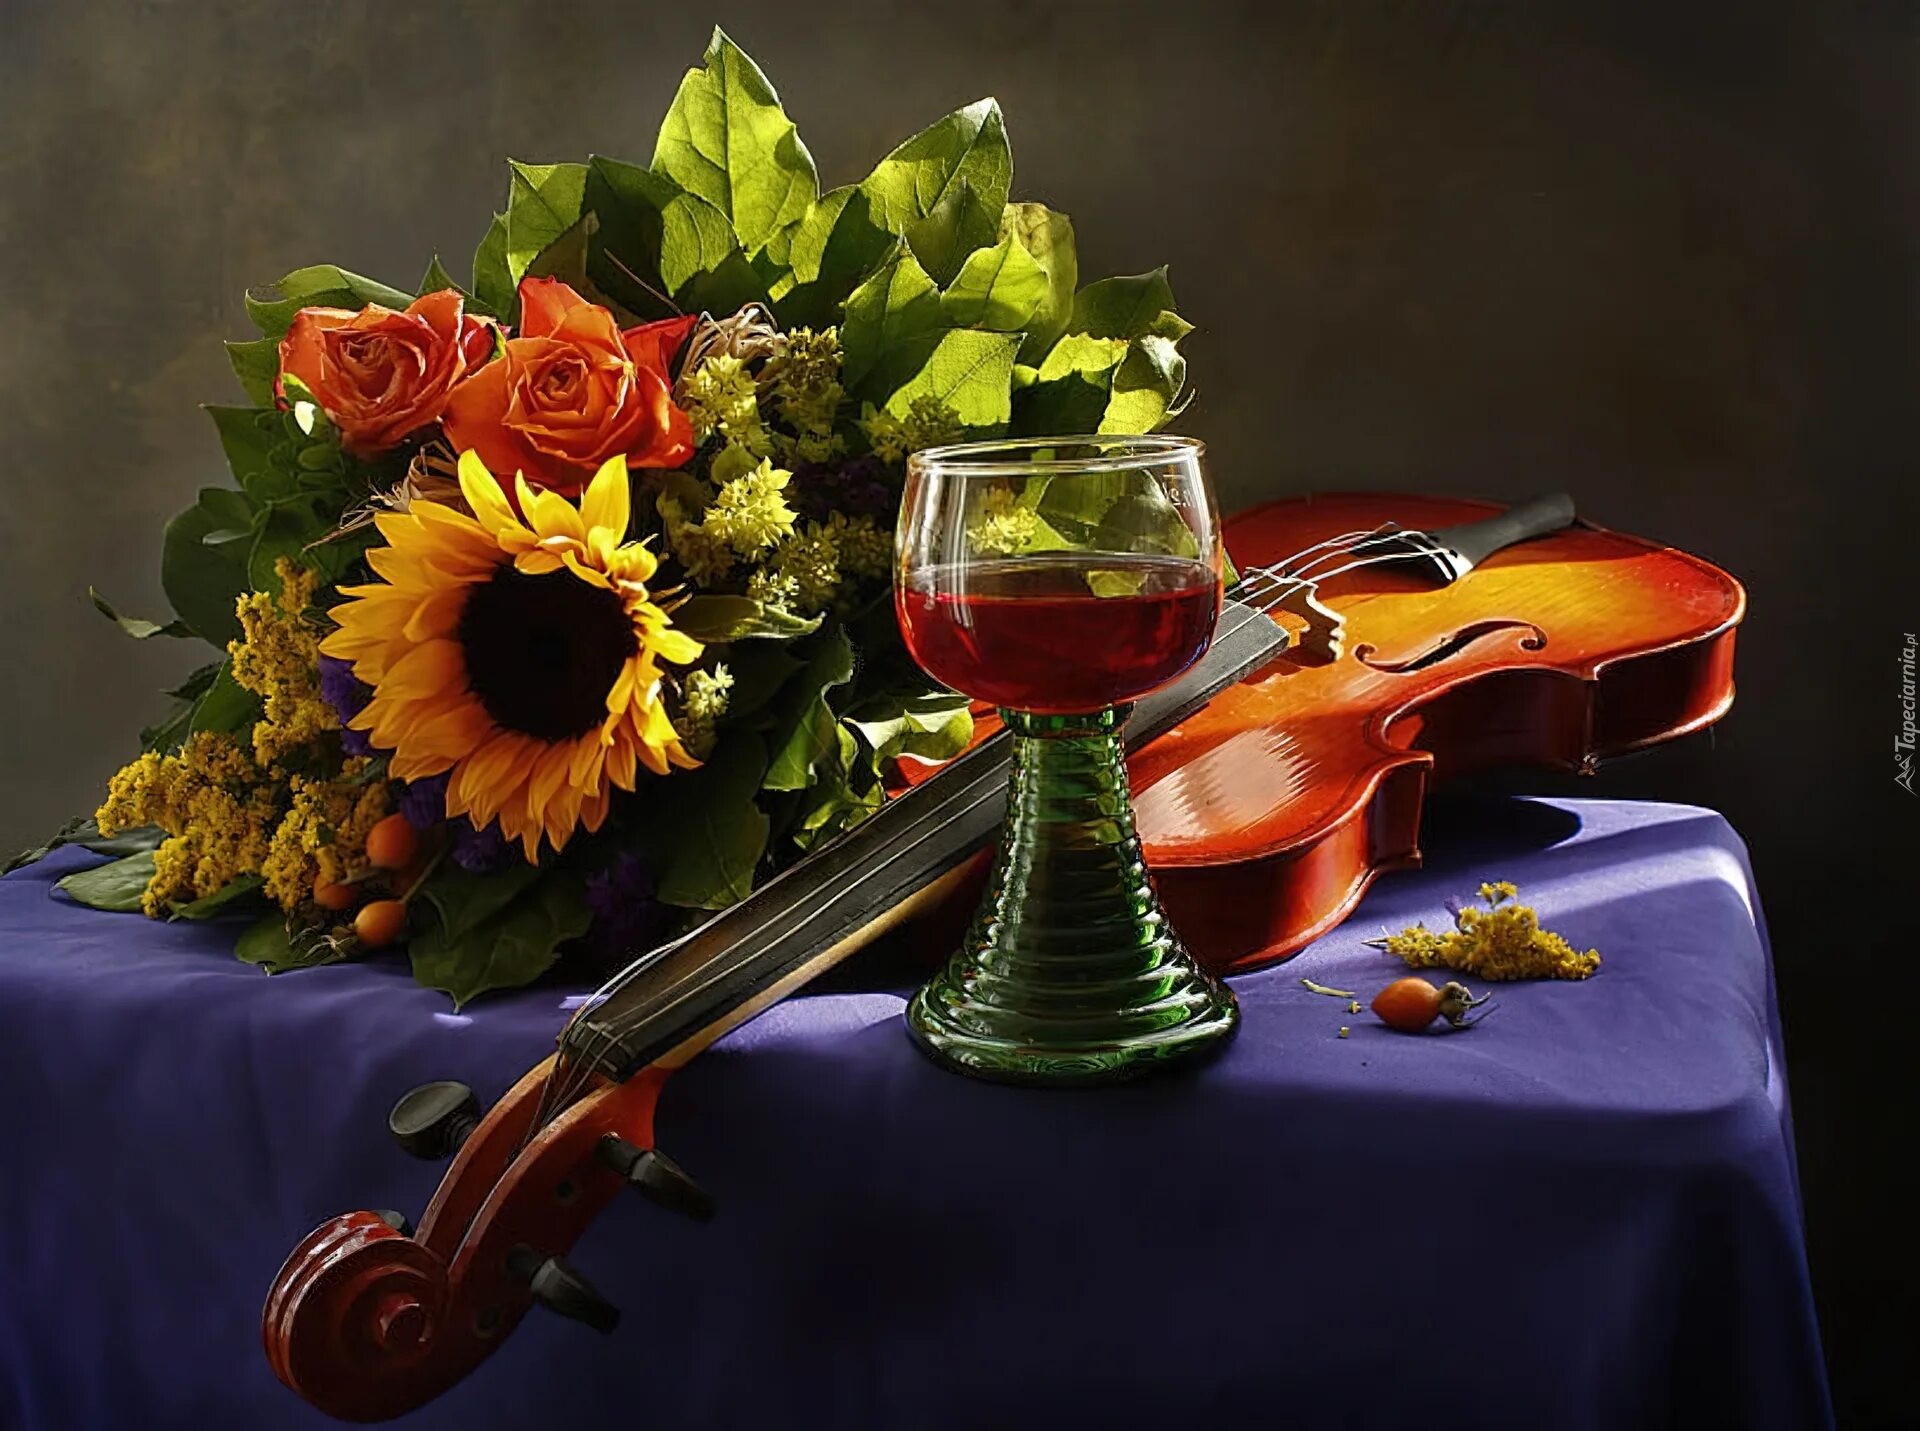 Музыка гитара и скрипка. Натюрморт с музыкальными инструментами. Музыкальные инструменты и цветы. Натюрморт со скрипкой. Красивая вечерняя композиция.